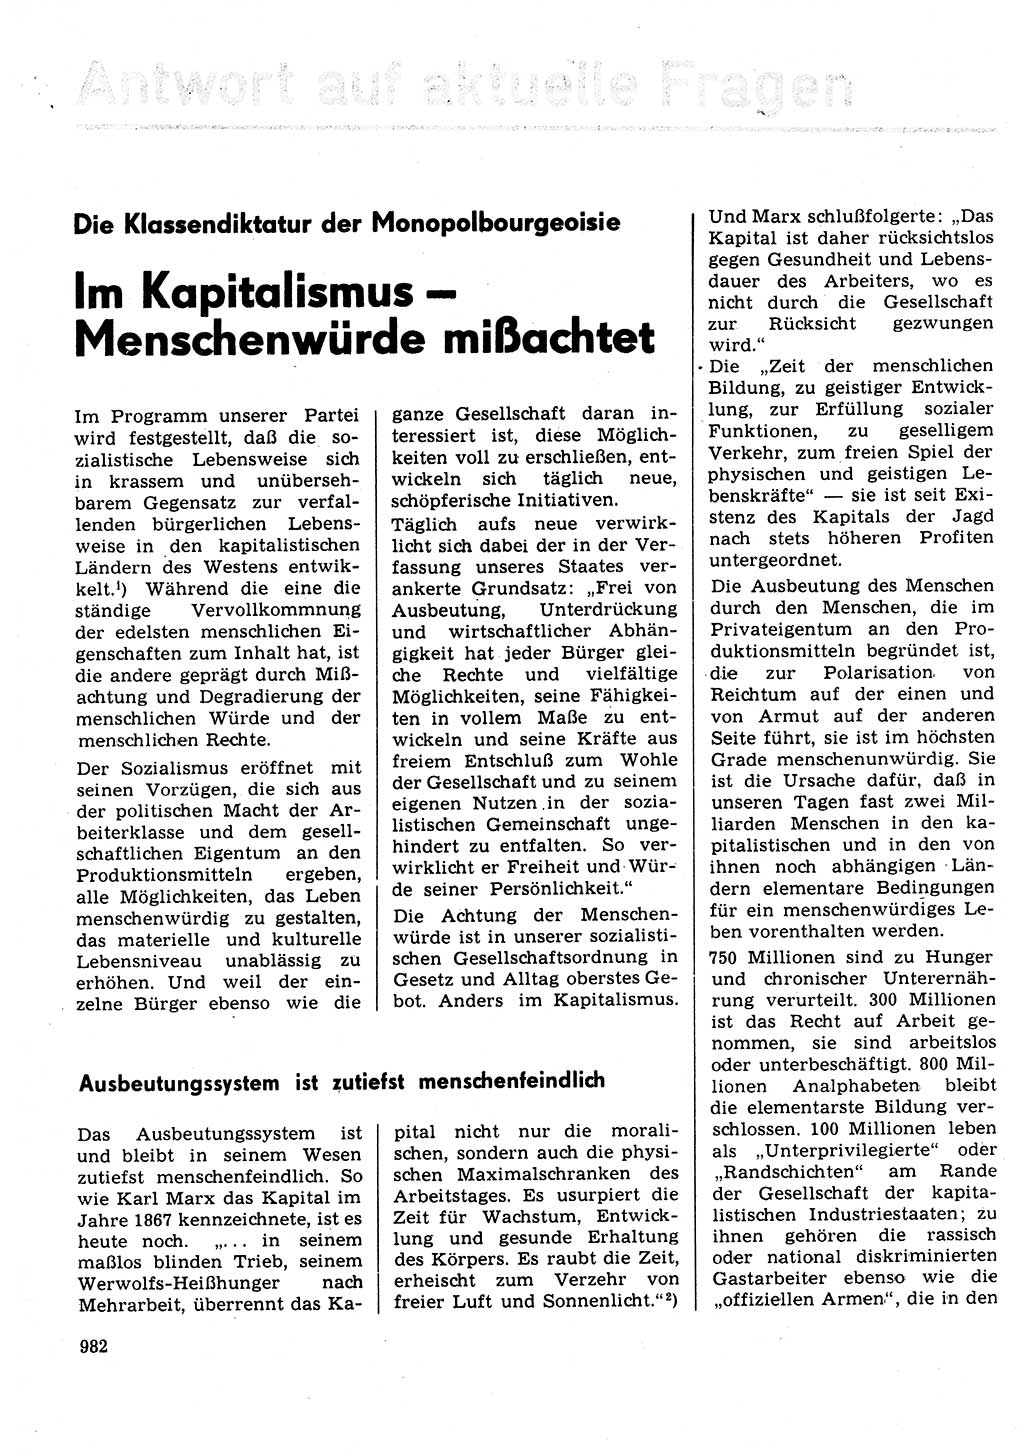 Neuer Weg (NW), Organ des Zentralkomitees (ZK) der SED (Sozialistische Einheitspartei Deutschlands) für Fragen des Parteilebens, 31. Jahrgang [Deutsche Demokratische Republik (DDR)] 1976, Seite 982 (NW ZK SED DDR 1976, S. 982)